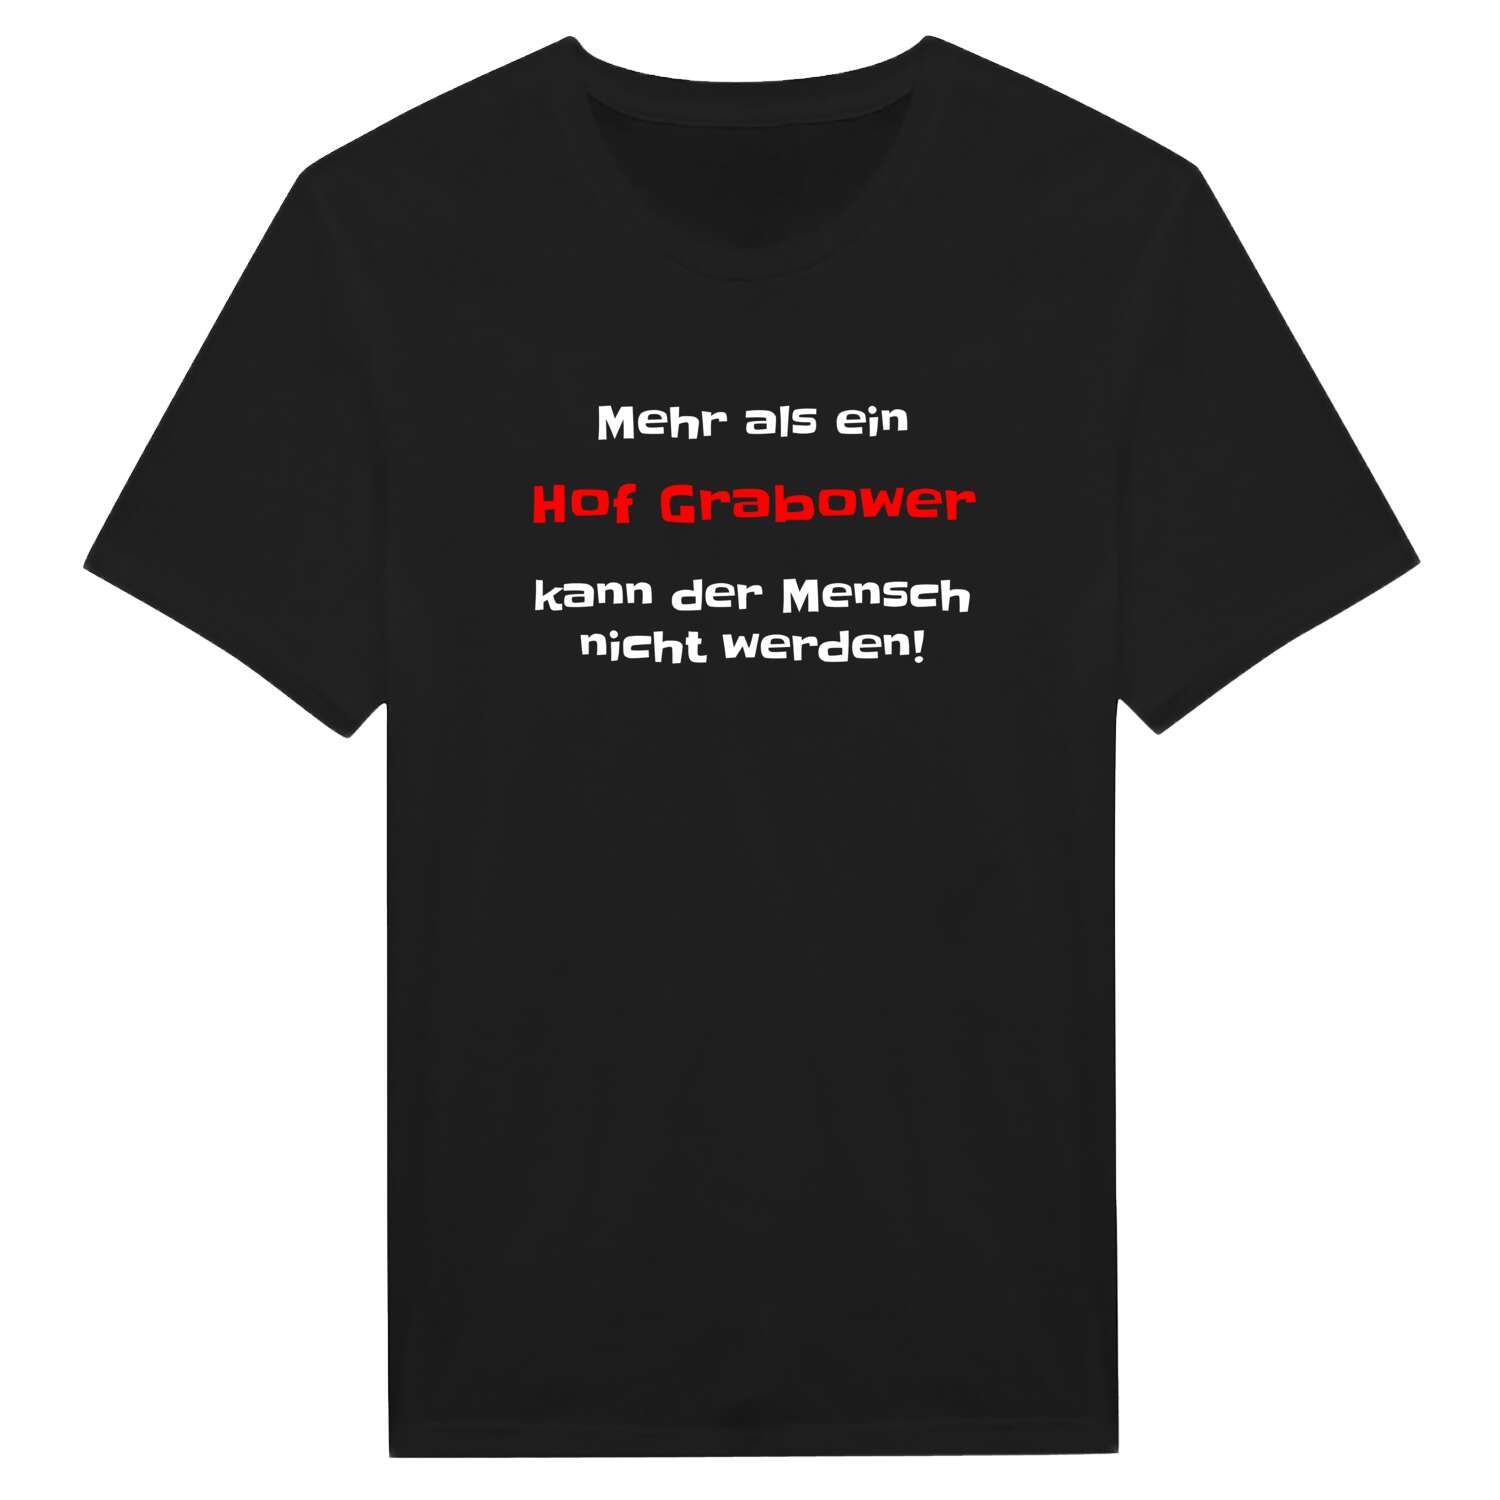 Hof Grabow T-Shirt »Mehr als ein«